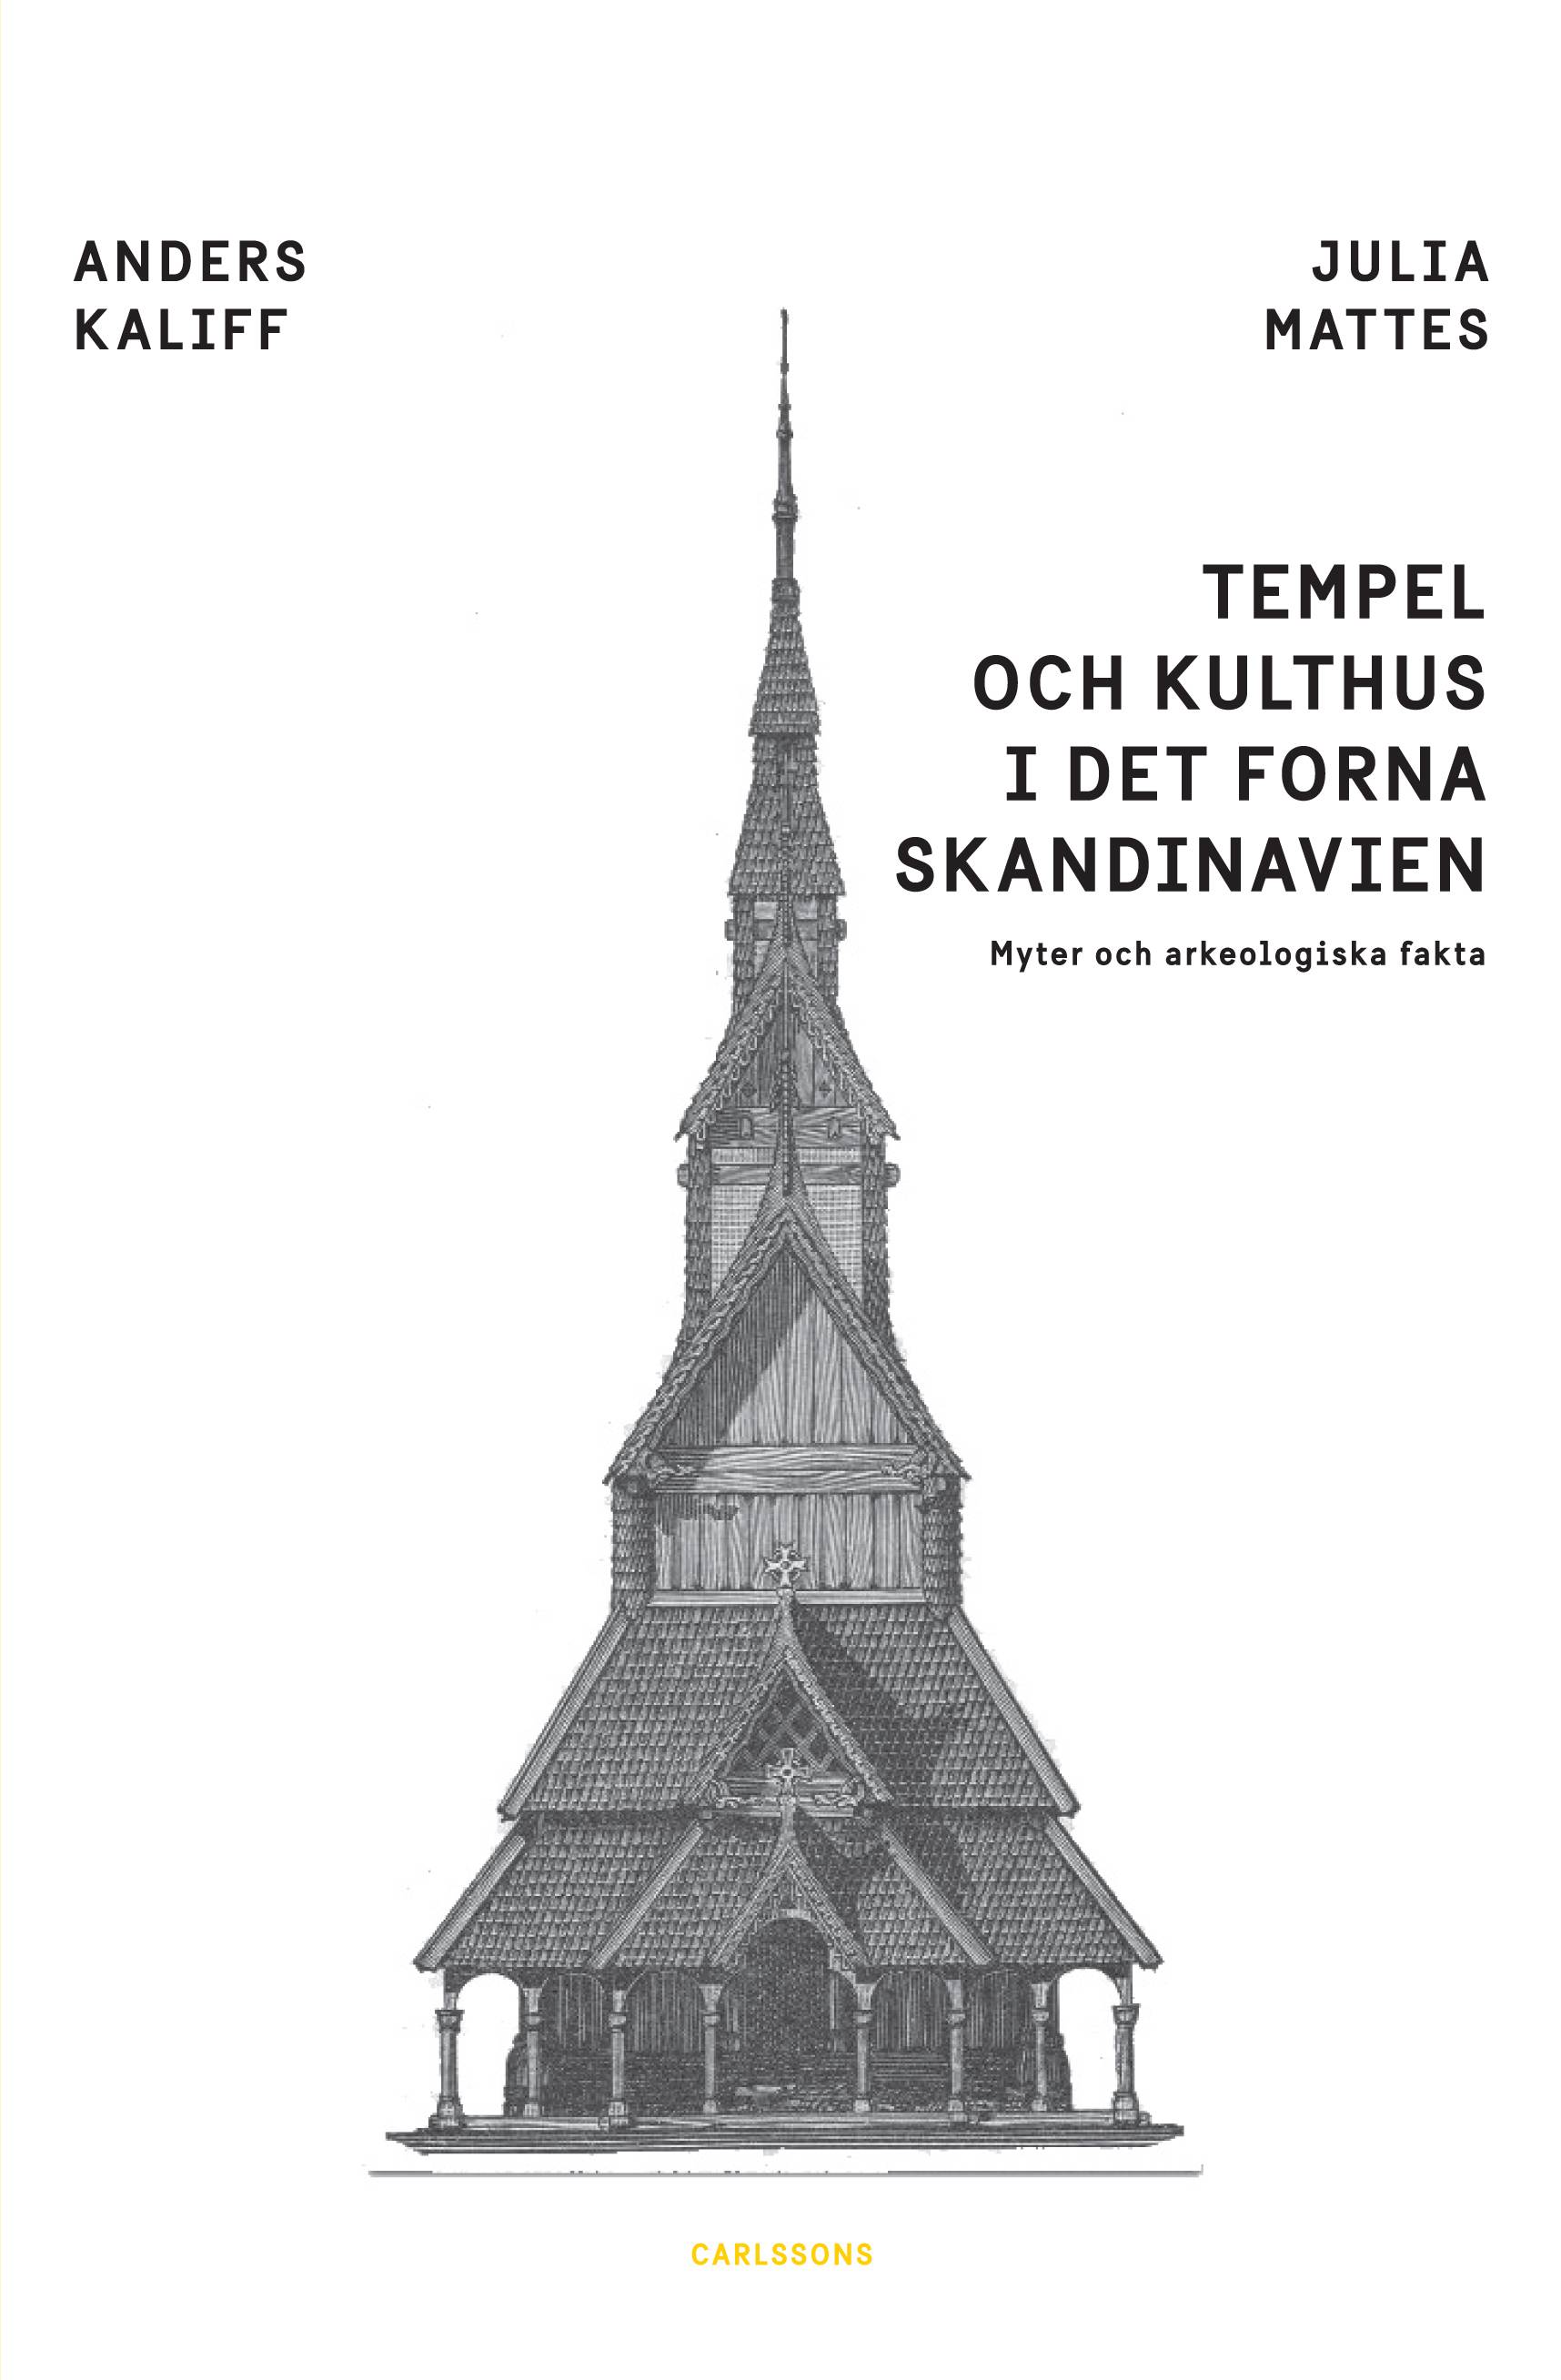 Tempel och kulthus i det forna skandinavien : myter och arkeologiska fakta